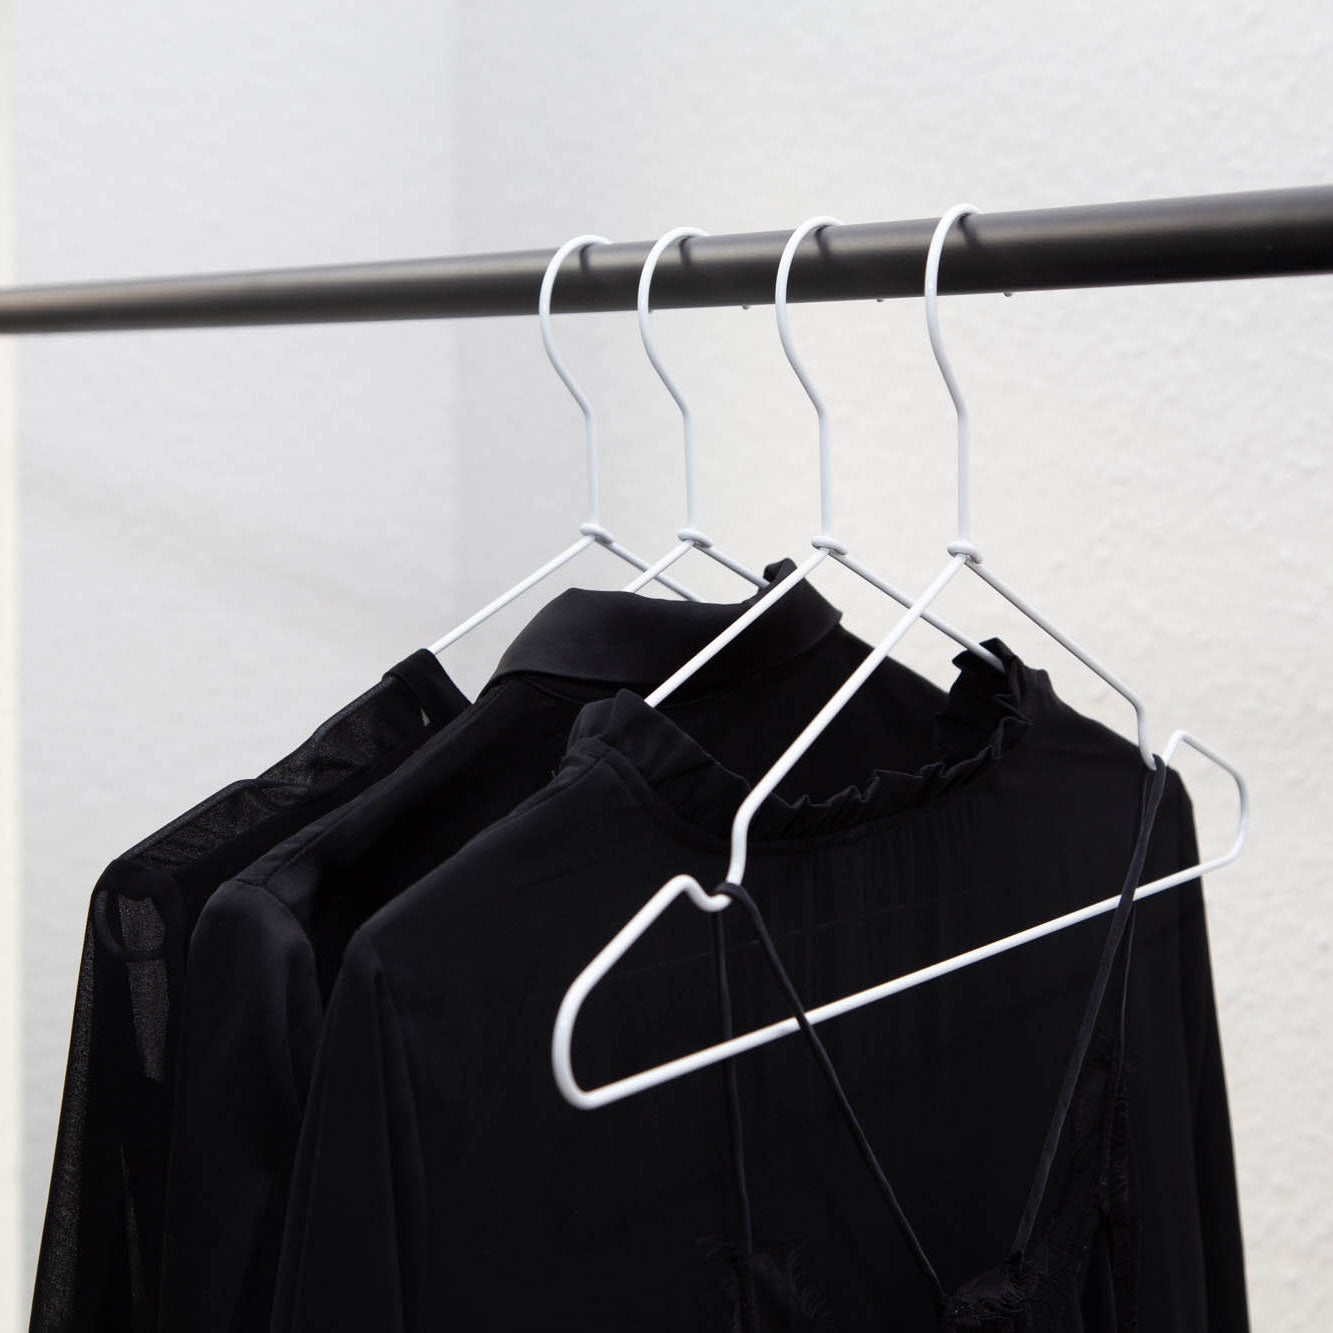 Vier schwarze Kleidungsstücke auf weißen Kleiderbügeln aus stabilem Metall (8 Stück) von Rod & Knot hängen an einer schwarzen Kleiderstange. Die Kleidungsstücke scheinen leicht und durchsichtig zu sein, wahrscheinlich Blusen oder Hemden, die vor einer schlichten weißen Wand ausgestellt sind. Die Kleiderbügel sind gleichmäßig verteilt, was für ein ordentliches und organisiertes Erscheinungsbild sorgt.